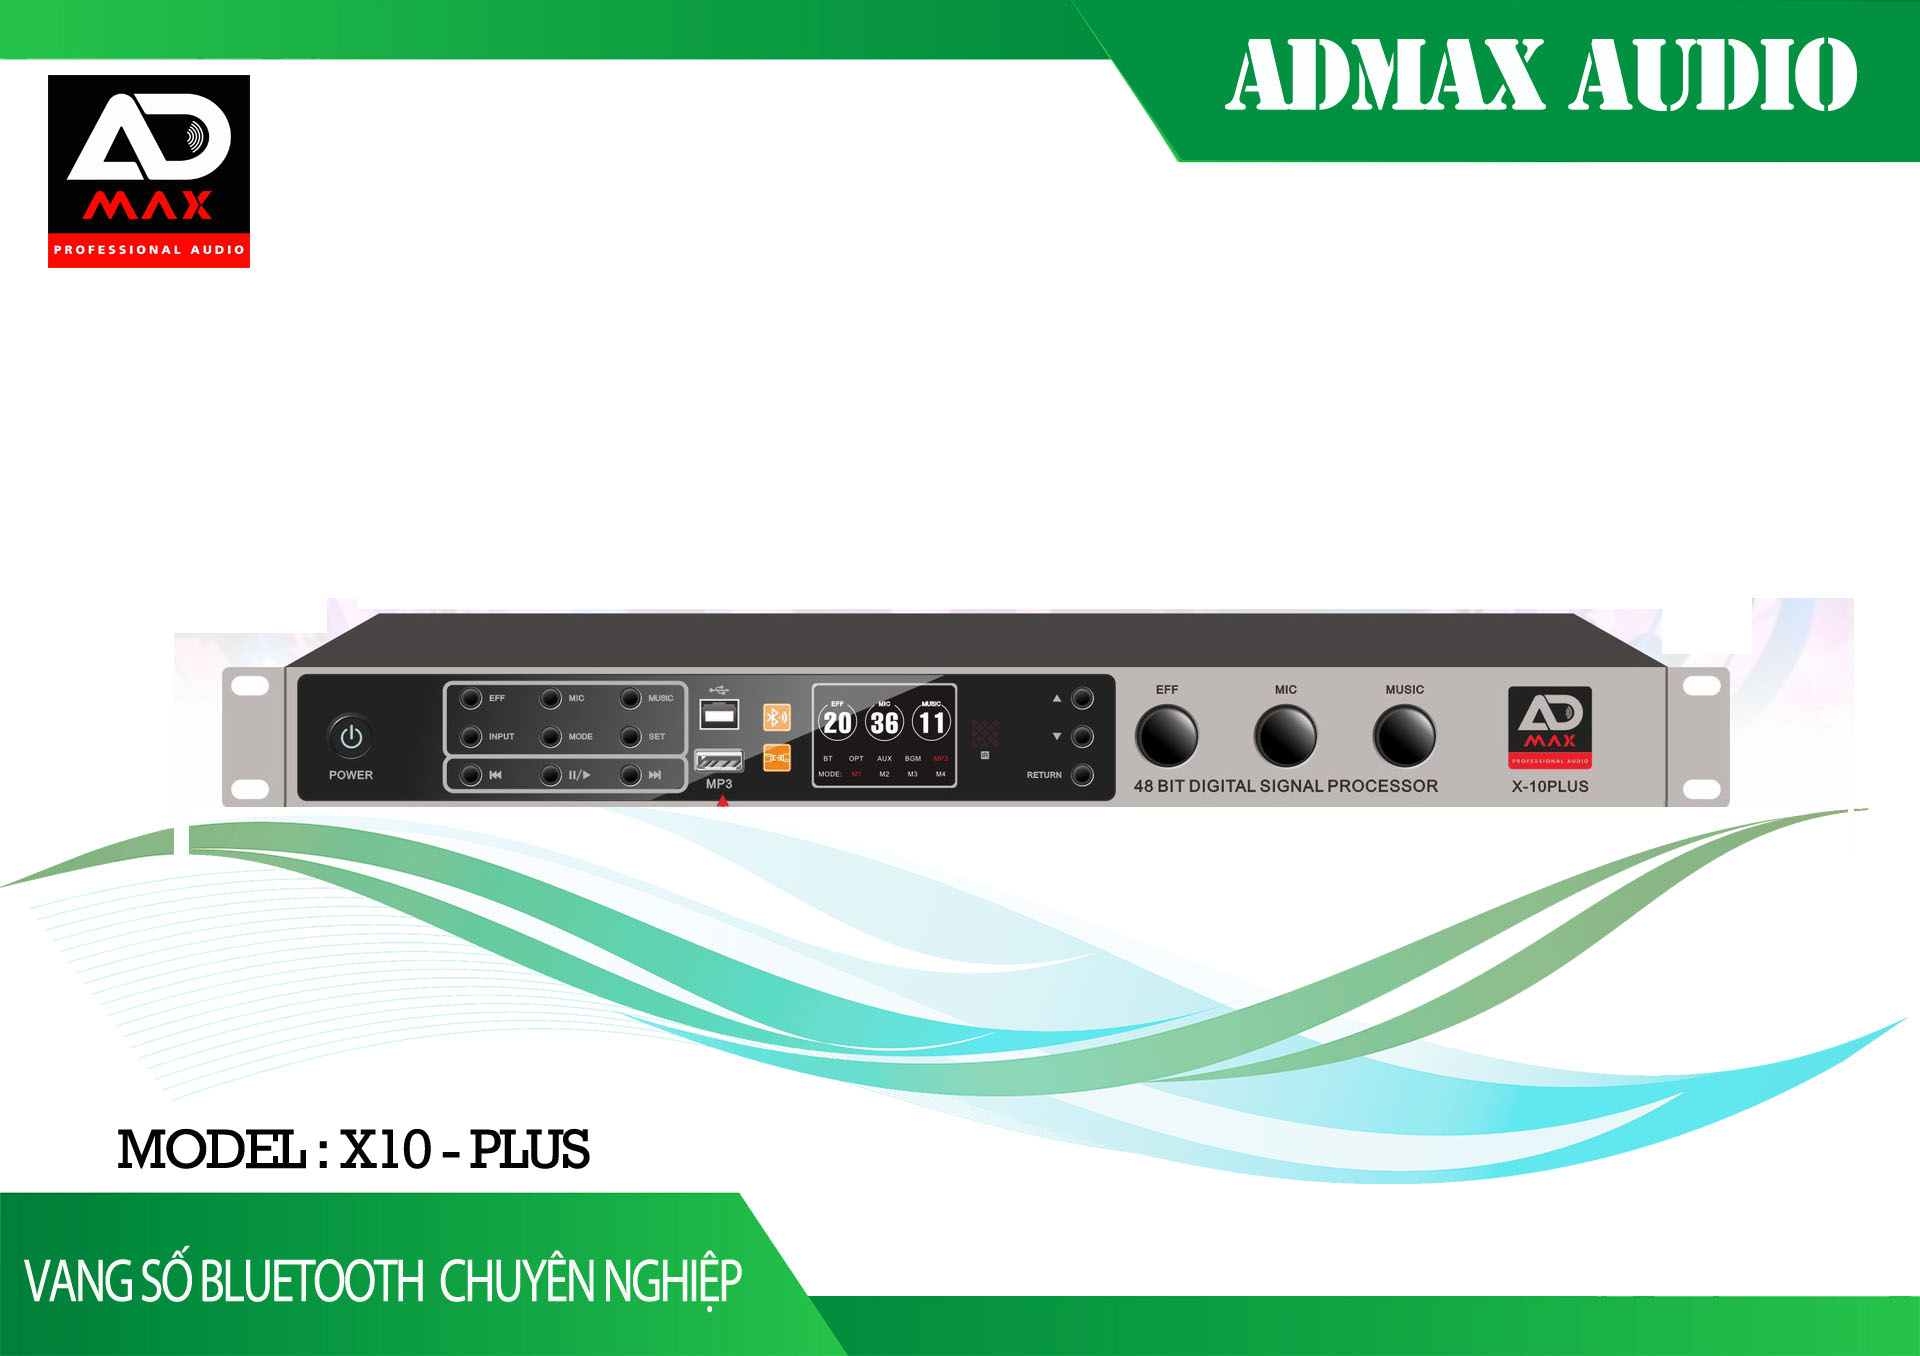 Vang số ADmax X-3000 Pro Chính hãng - Gia Huy Audio